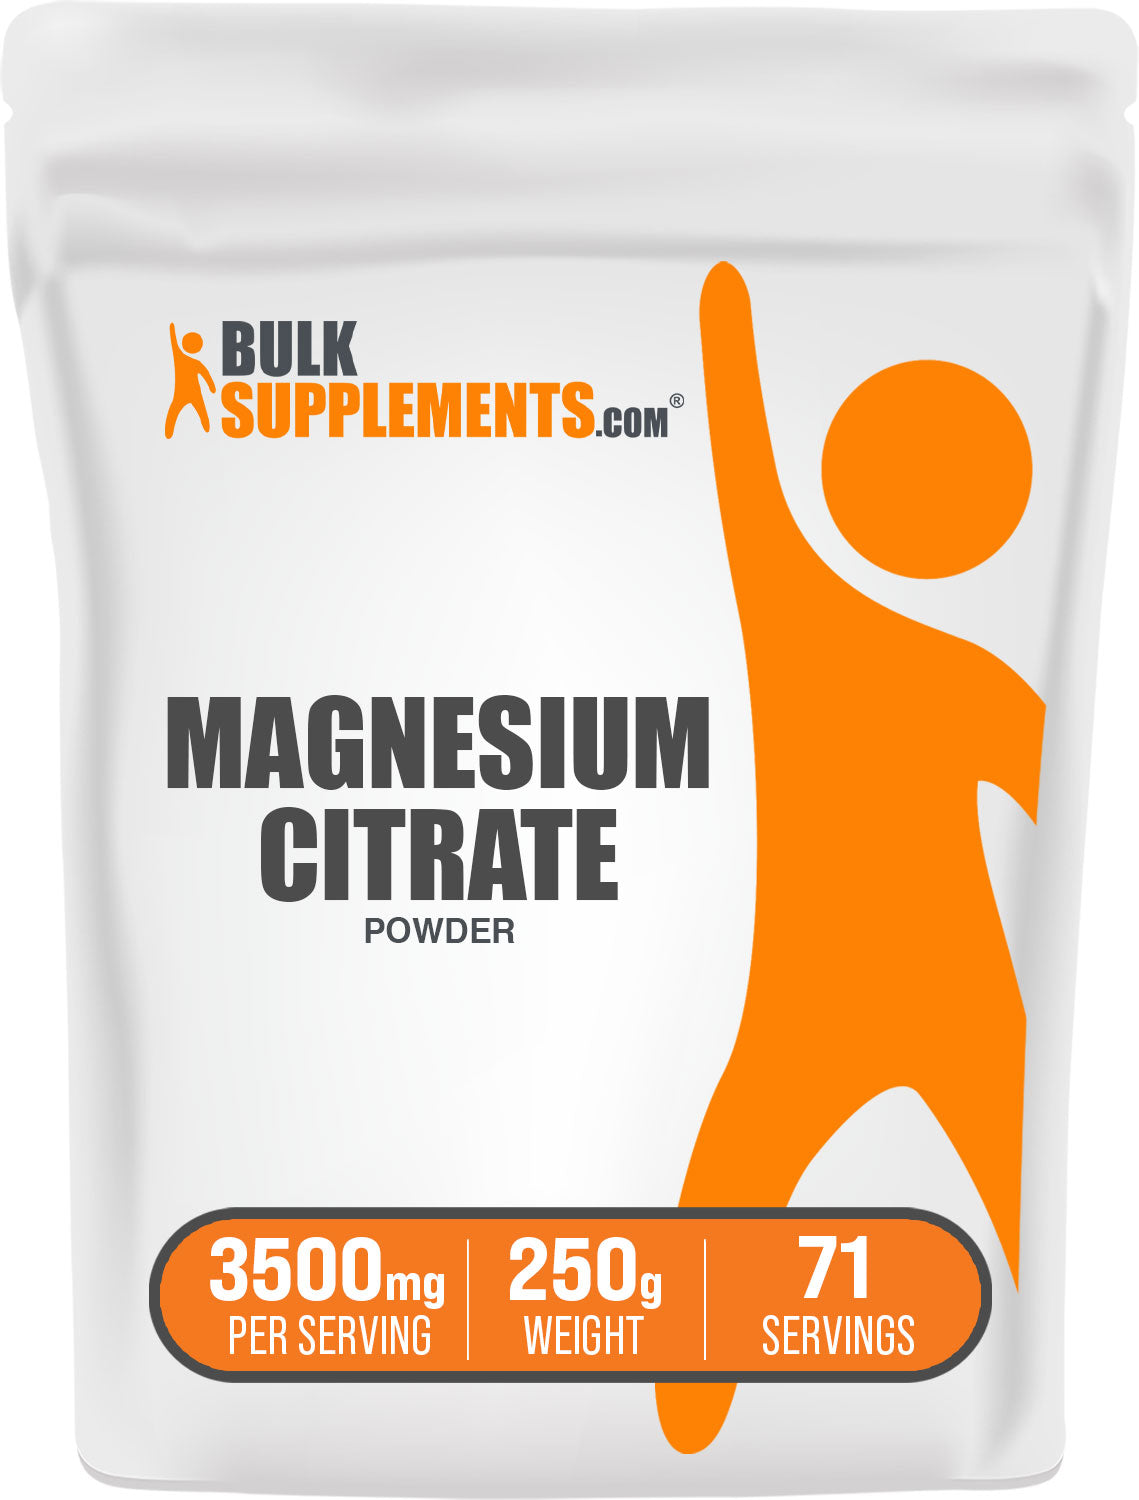 Magnesium Citrate magnesium powder 250g bag 